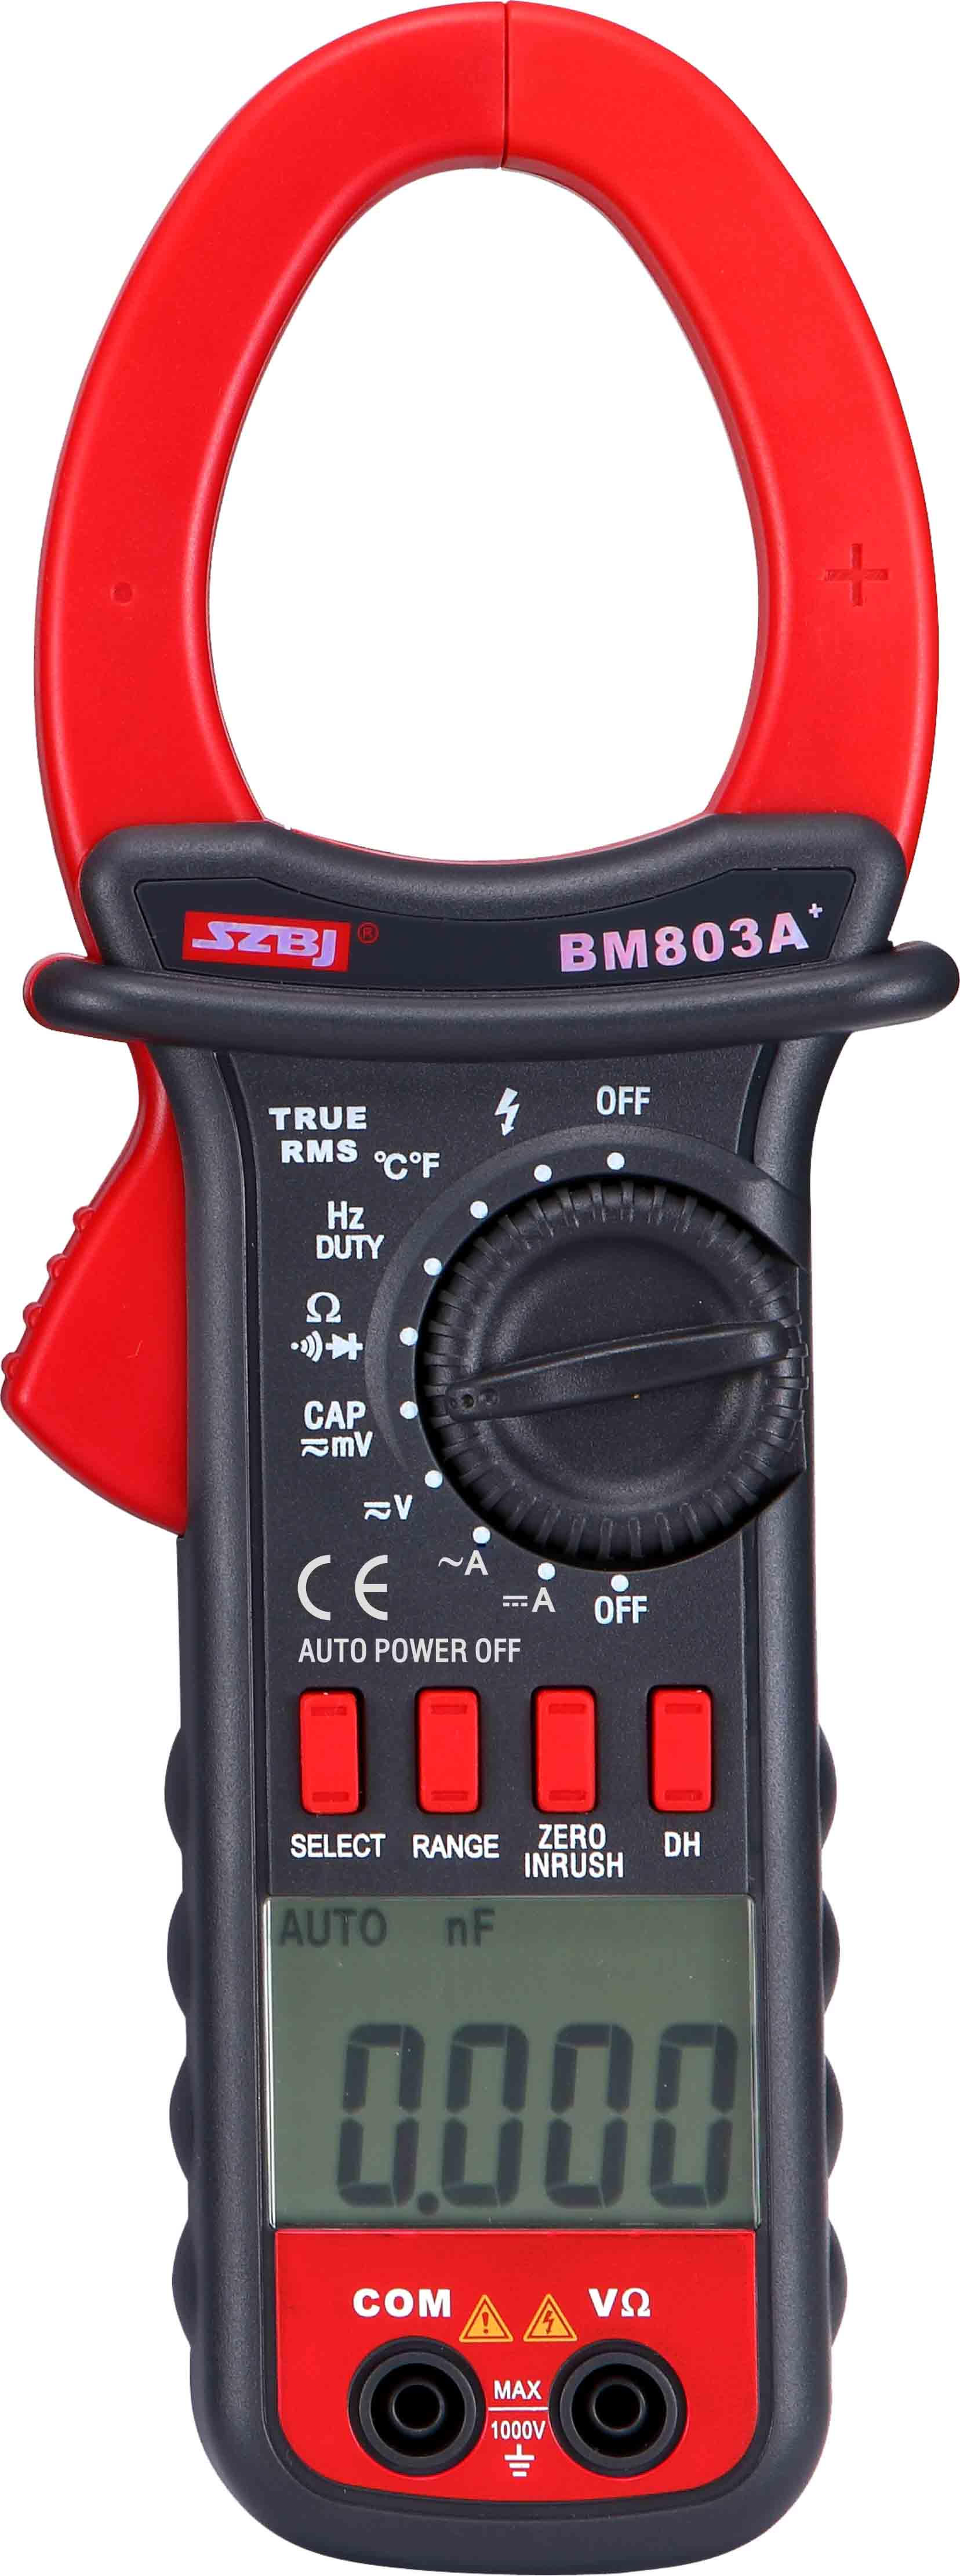 BM803A+-2020